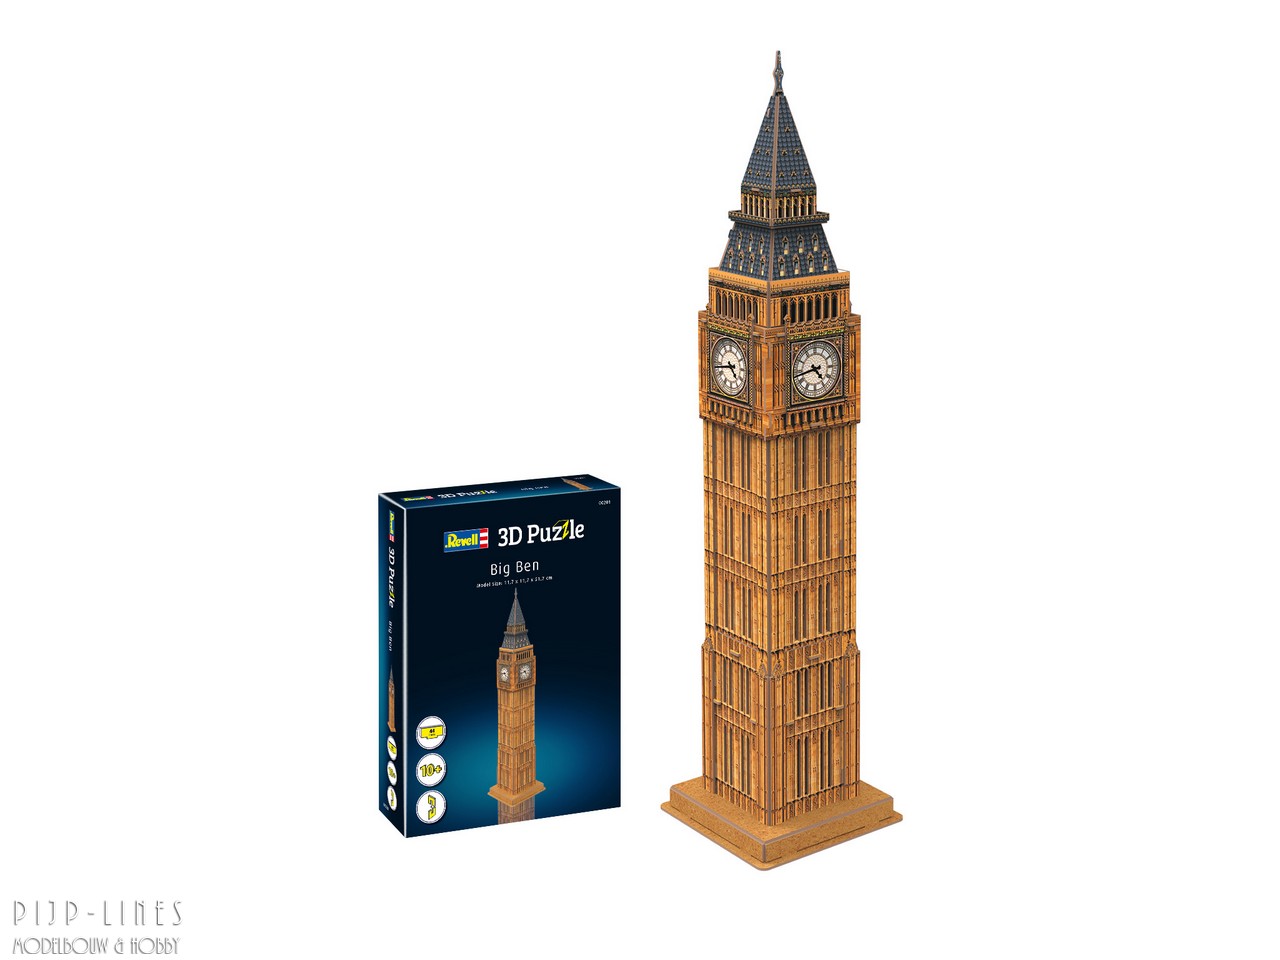 soort morfine onderdelen Revell 00201 3D Puzzel "Big Ben" - Pijp-Lines Modelbouw & Hobby